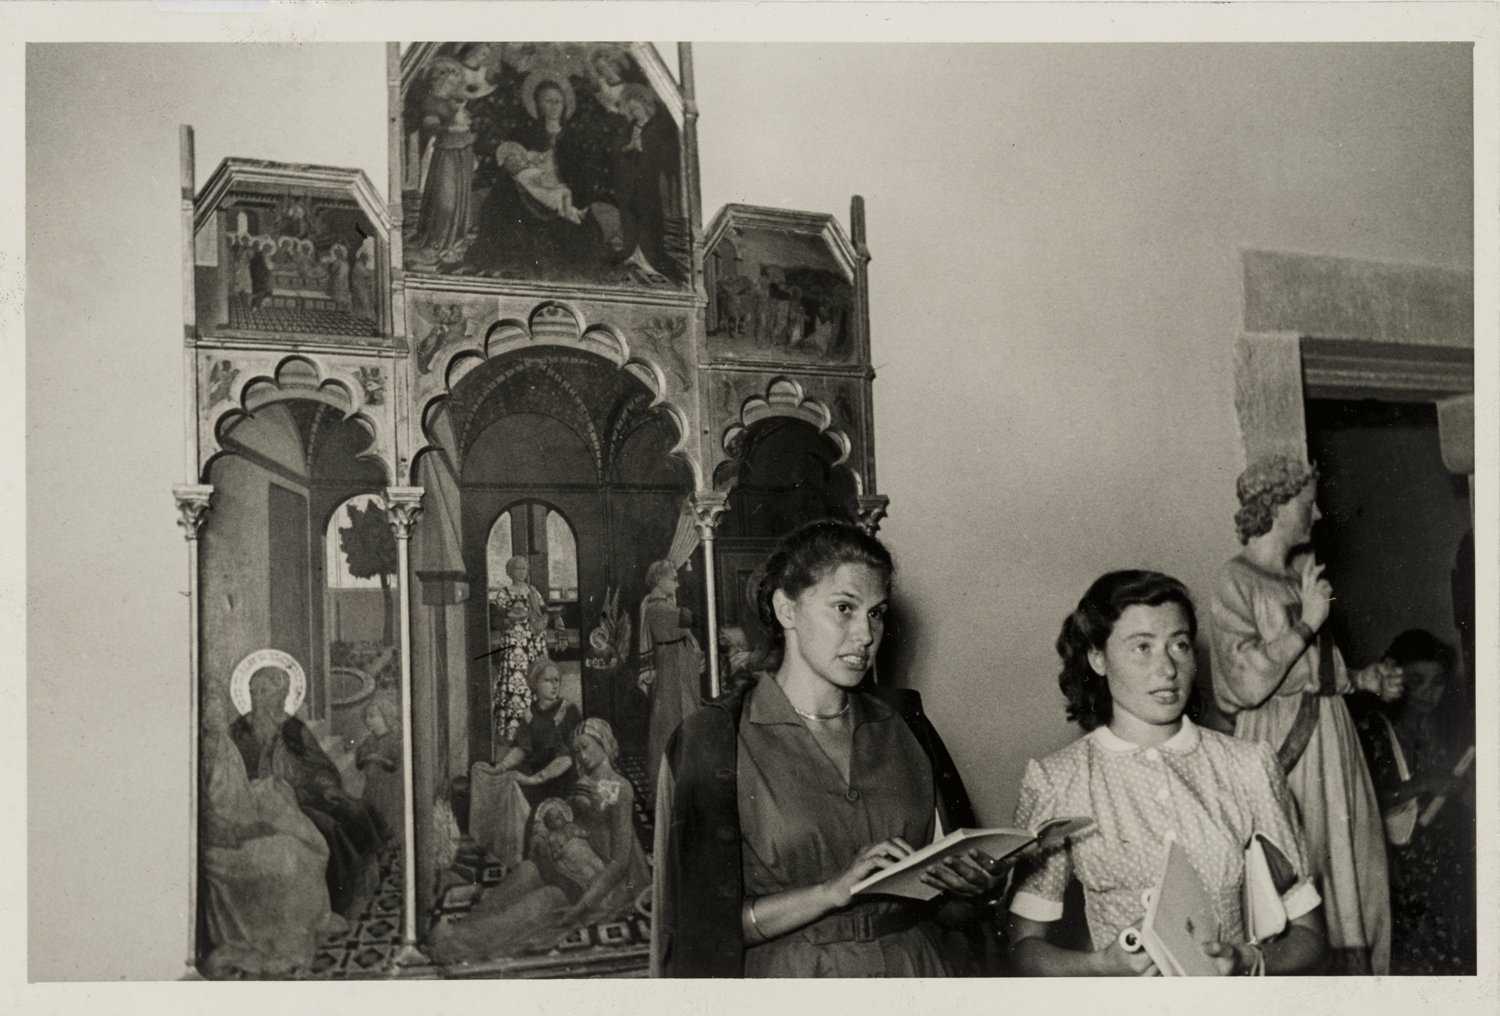 Firenze, le inedite foto di Paola Barocchi e gli scritti di Maria Fossi raccontano la città durante la guerra